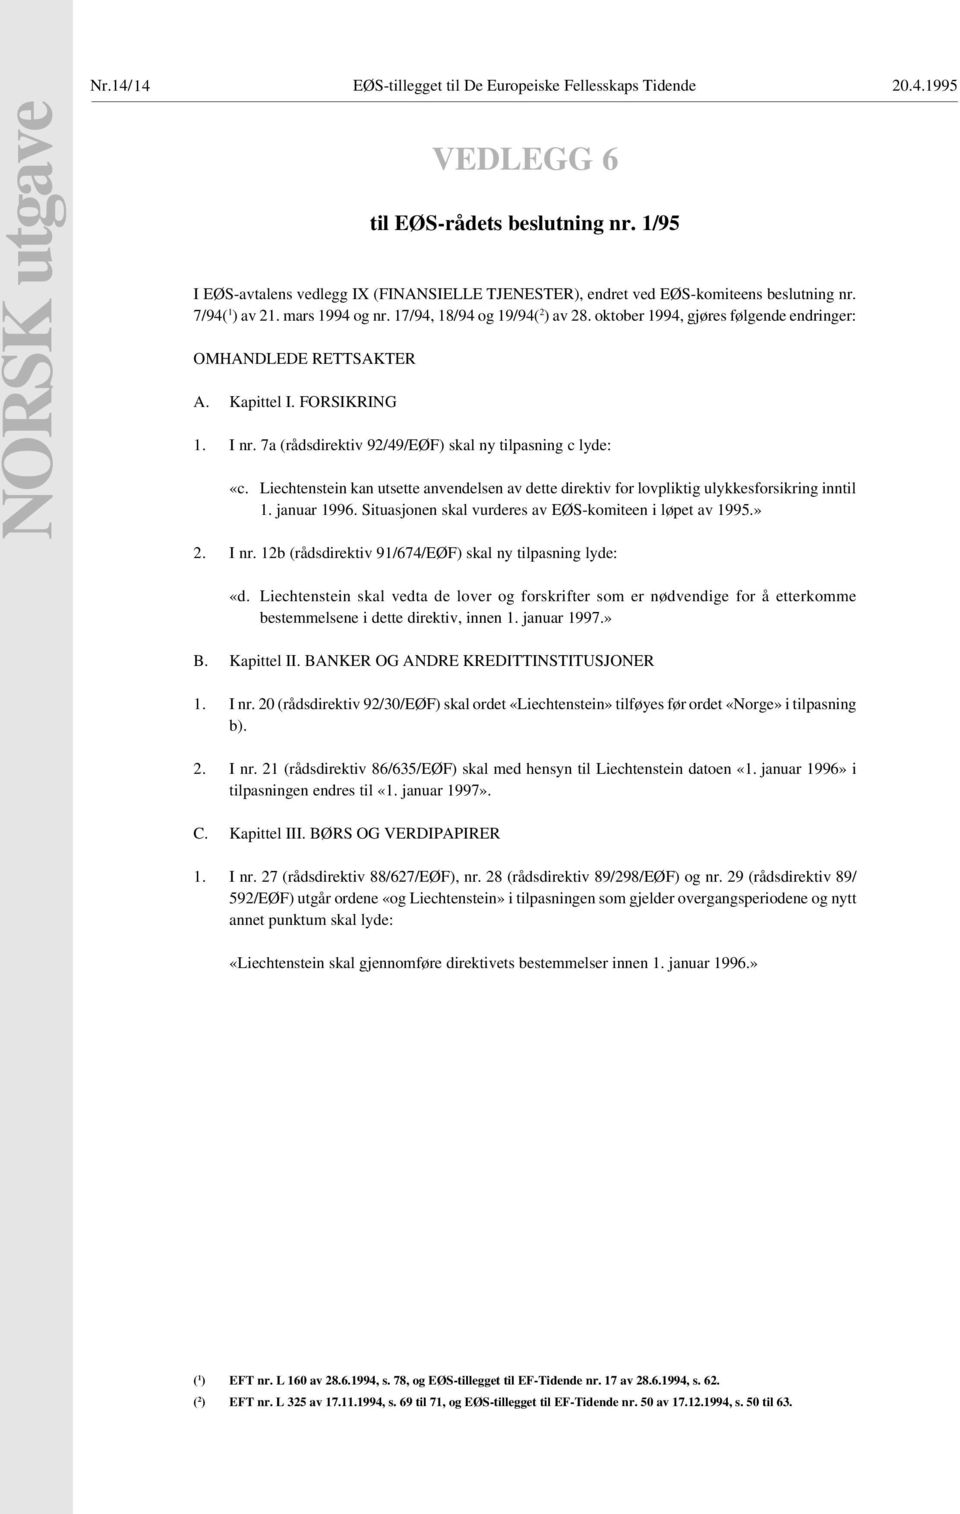 7a (rådsdirektiv 92/49/EØF) skal ny tilpasning c lyde: «c. Liechtenstein kan utsette anvendelsen av dette direktiv for lovpliktig ulykkesforsikring inntil 1. januar 1996.